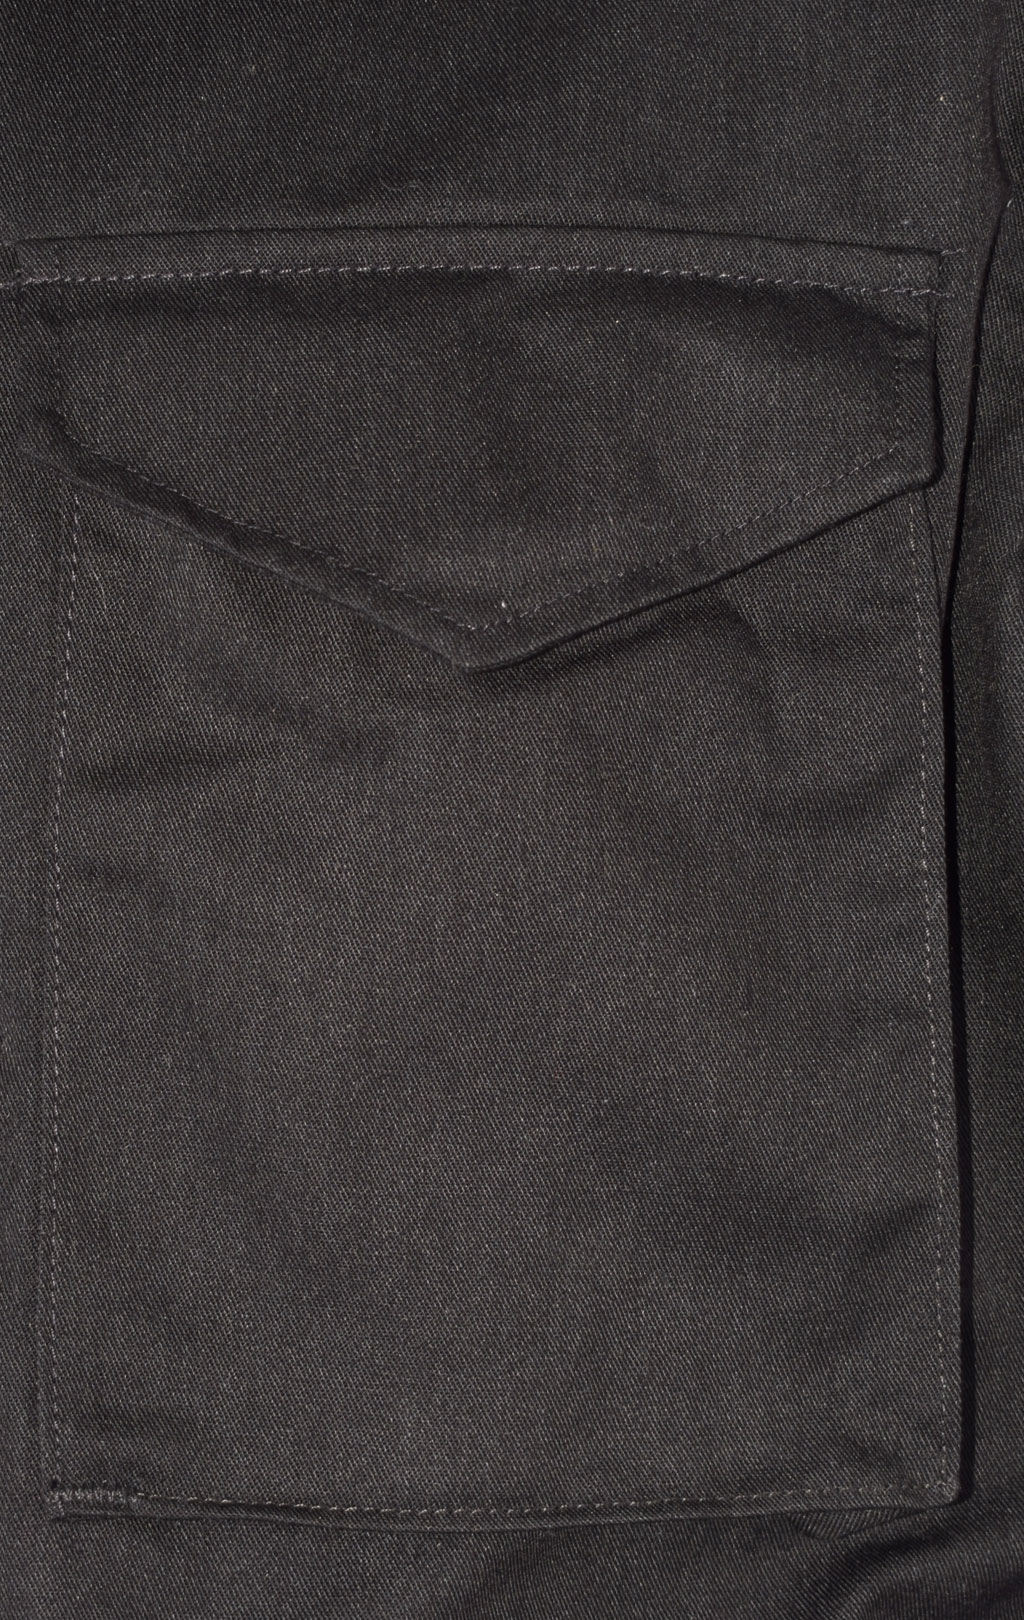 Куртка CLASSIC M-65 black США